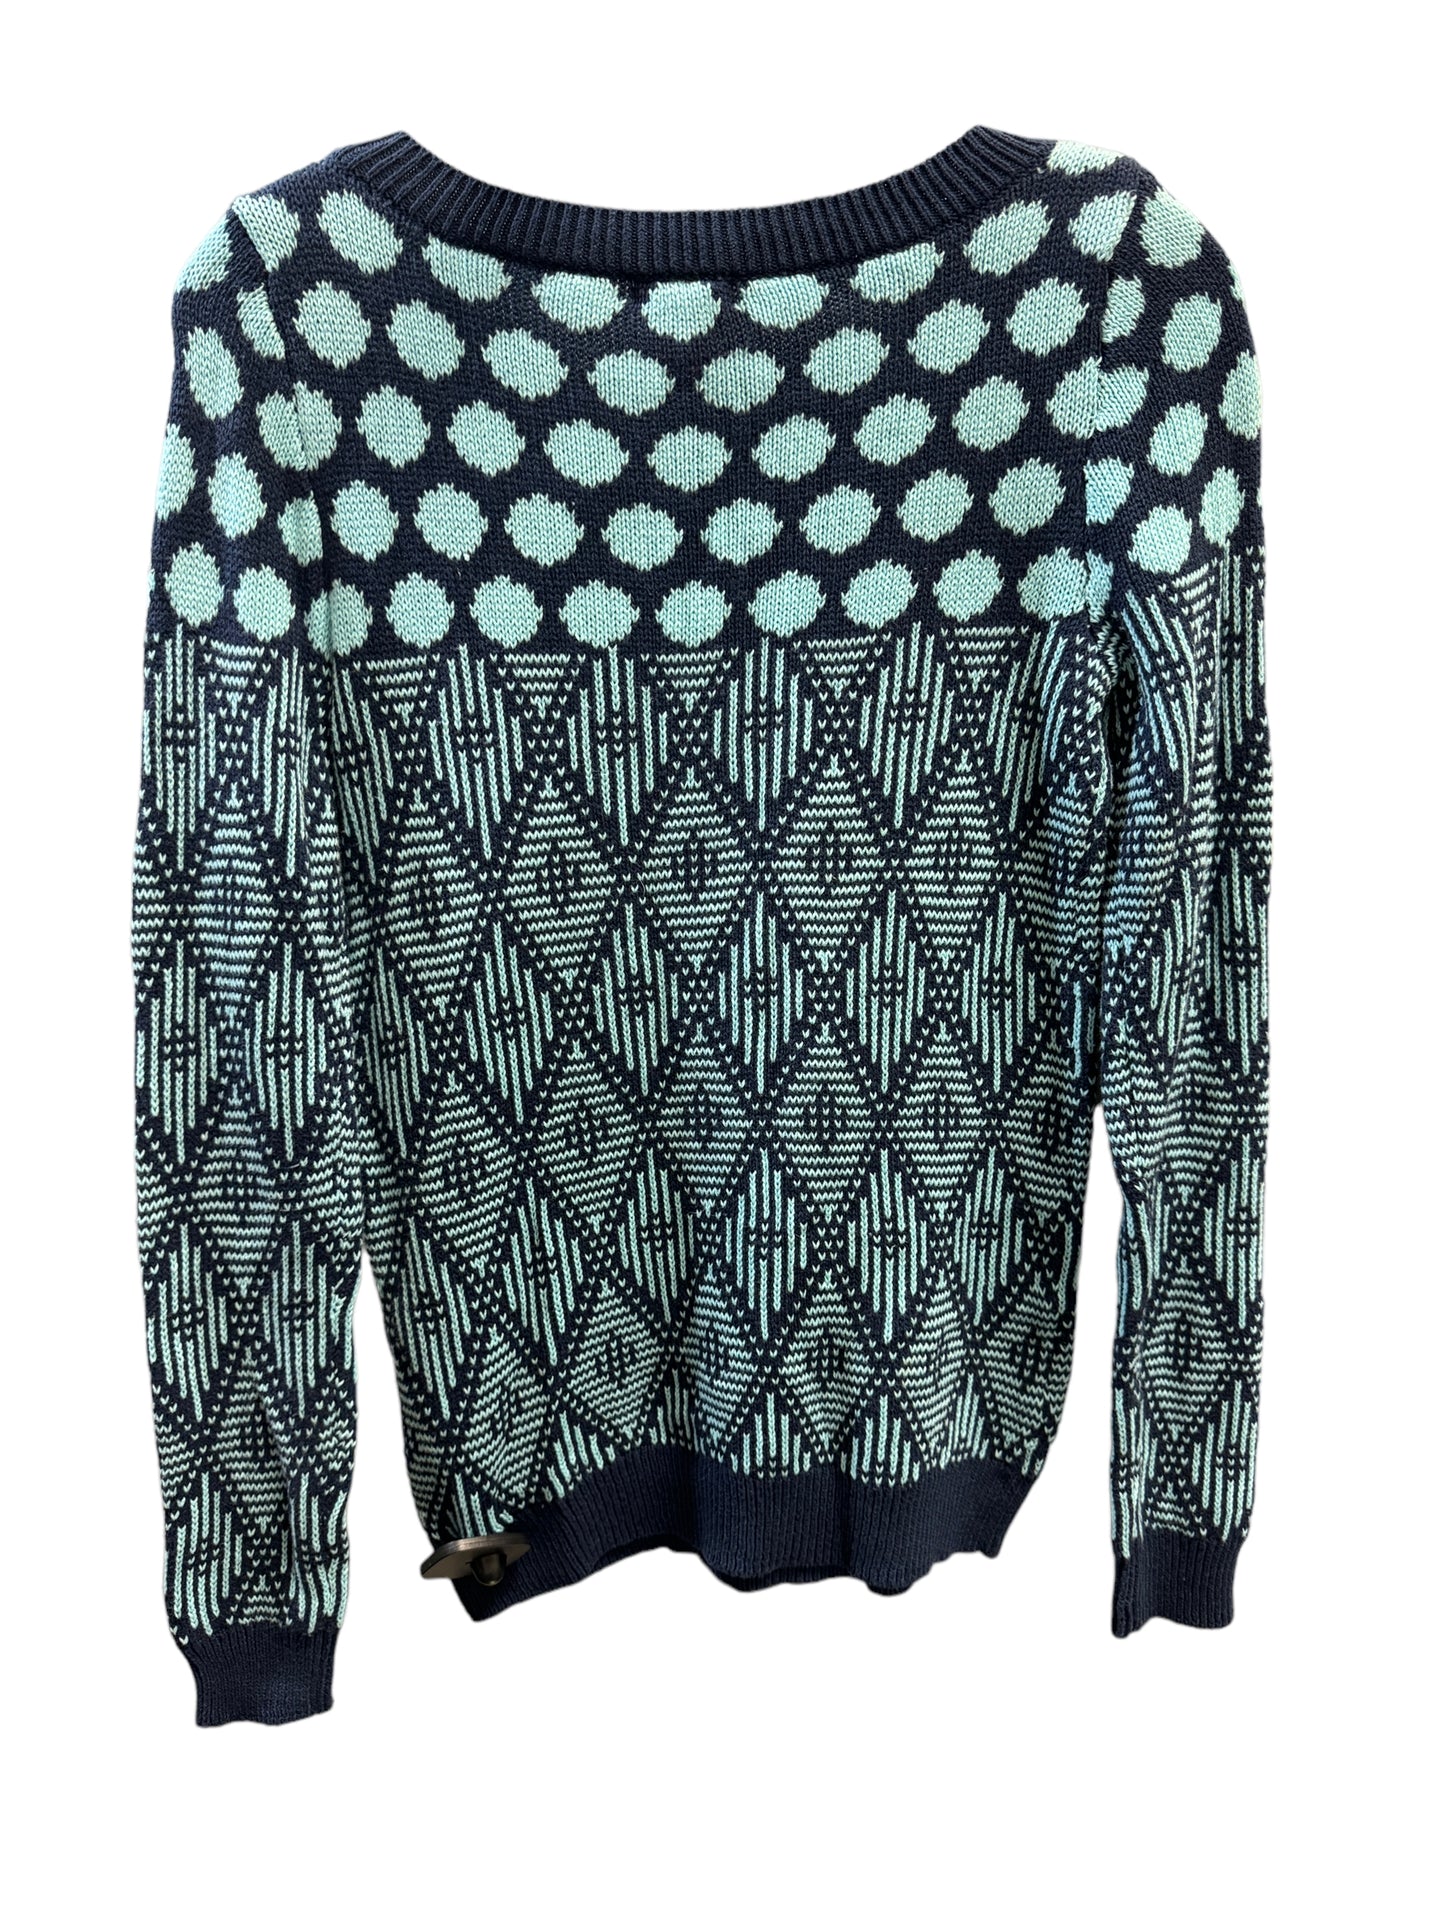 Sweater By Joe Fresh  Size: Xs